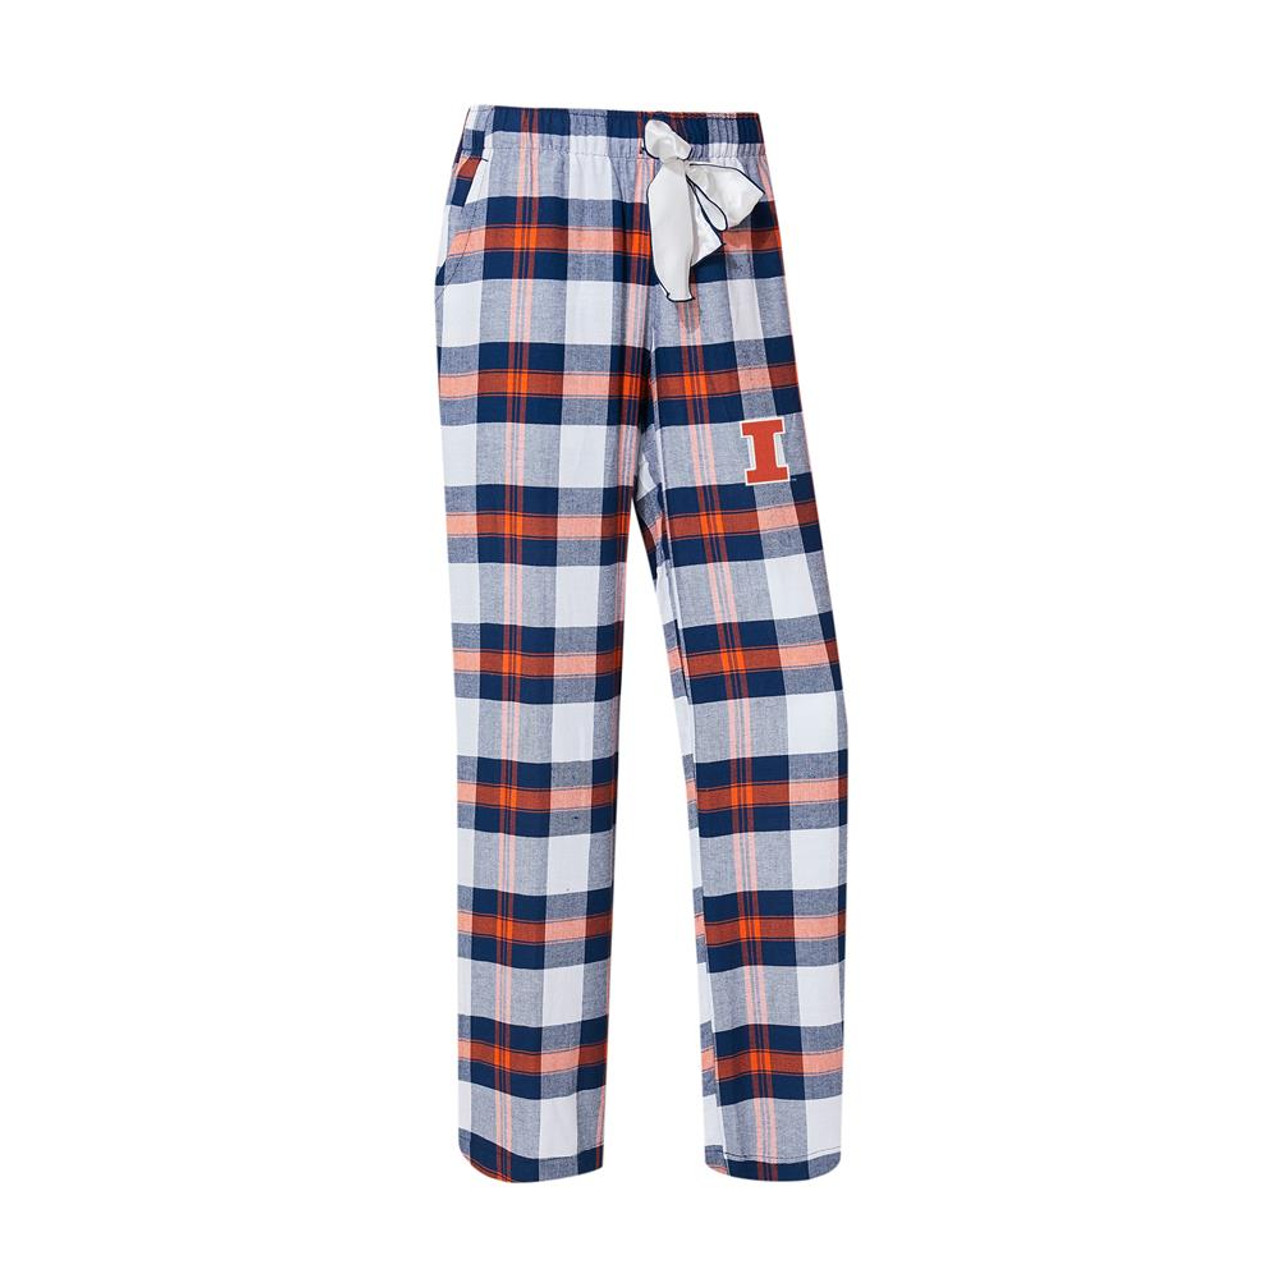 Concepts Sport Men's Chicago Cubs Plaid Flannel Pajama Pants